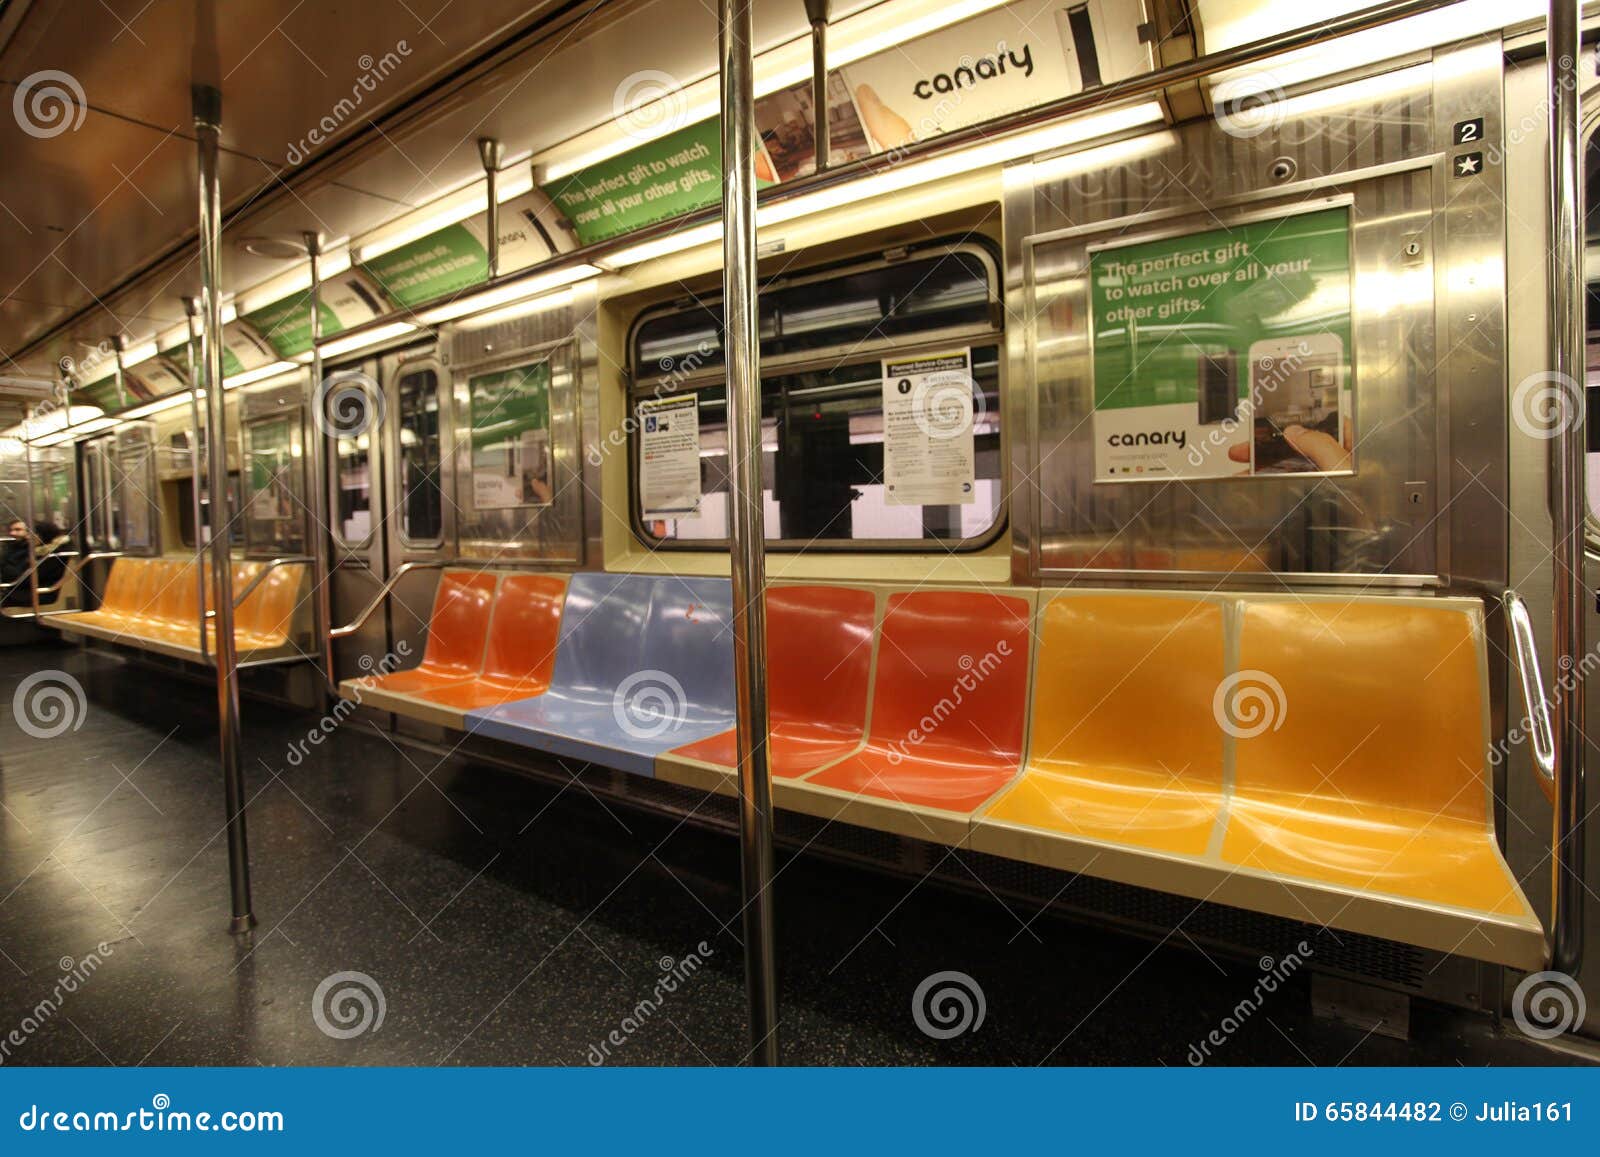 人纽约火车人群移动壁纸,手机壁纸,手机锁屏壁纸-魔秀